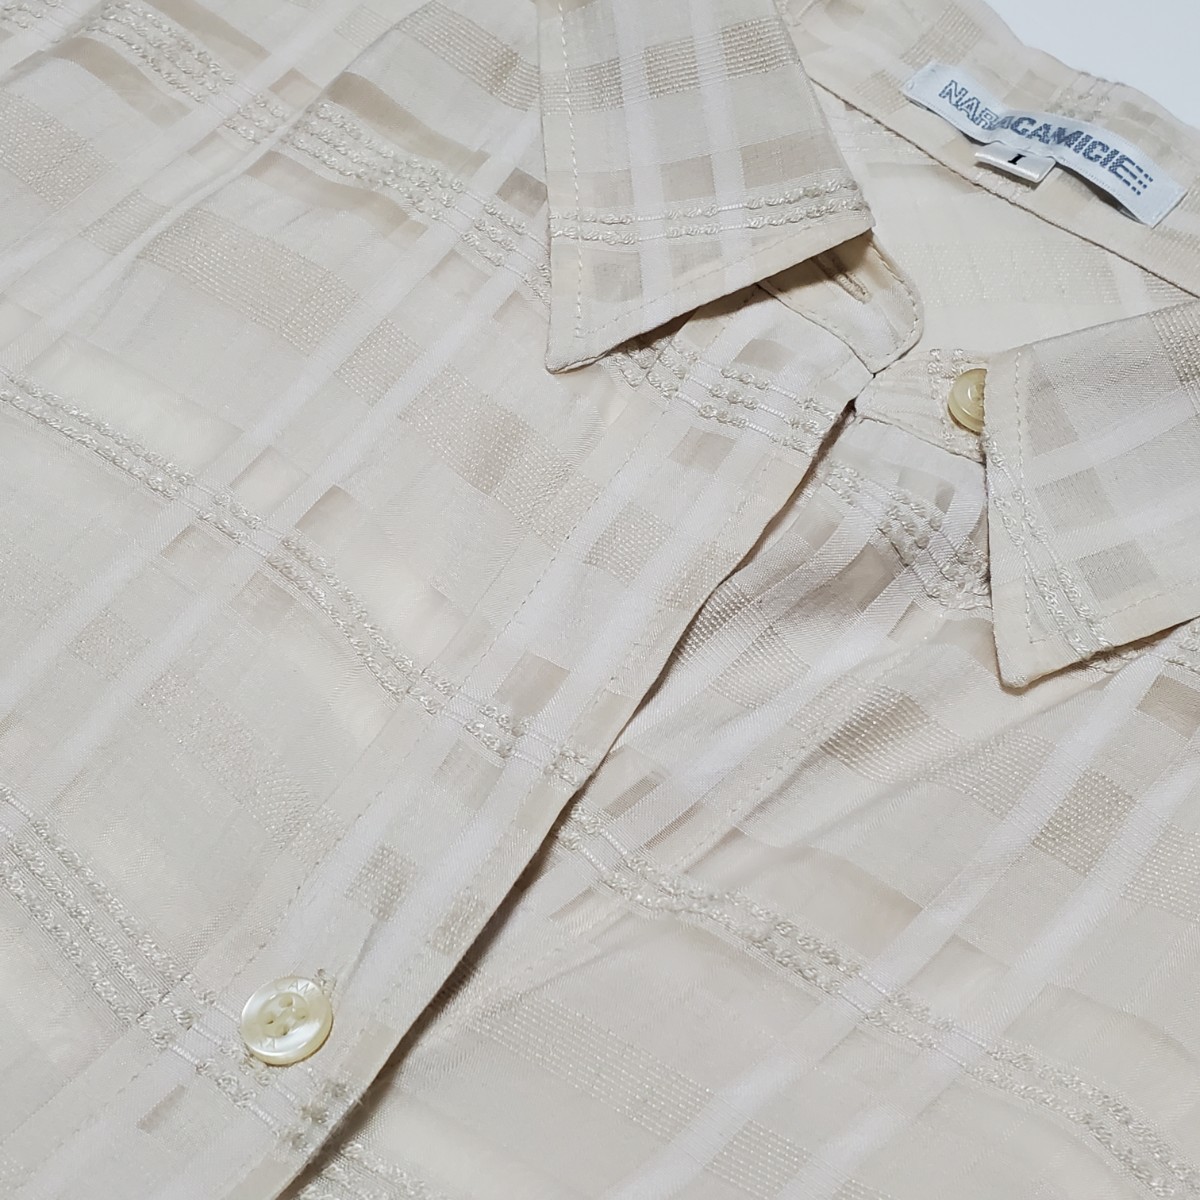 NARACAMICIE Nara Camicie оттенок бежевого прозрачный длинный рукав блуза размер 1( примерно M размер соответствует ) б/у товар 